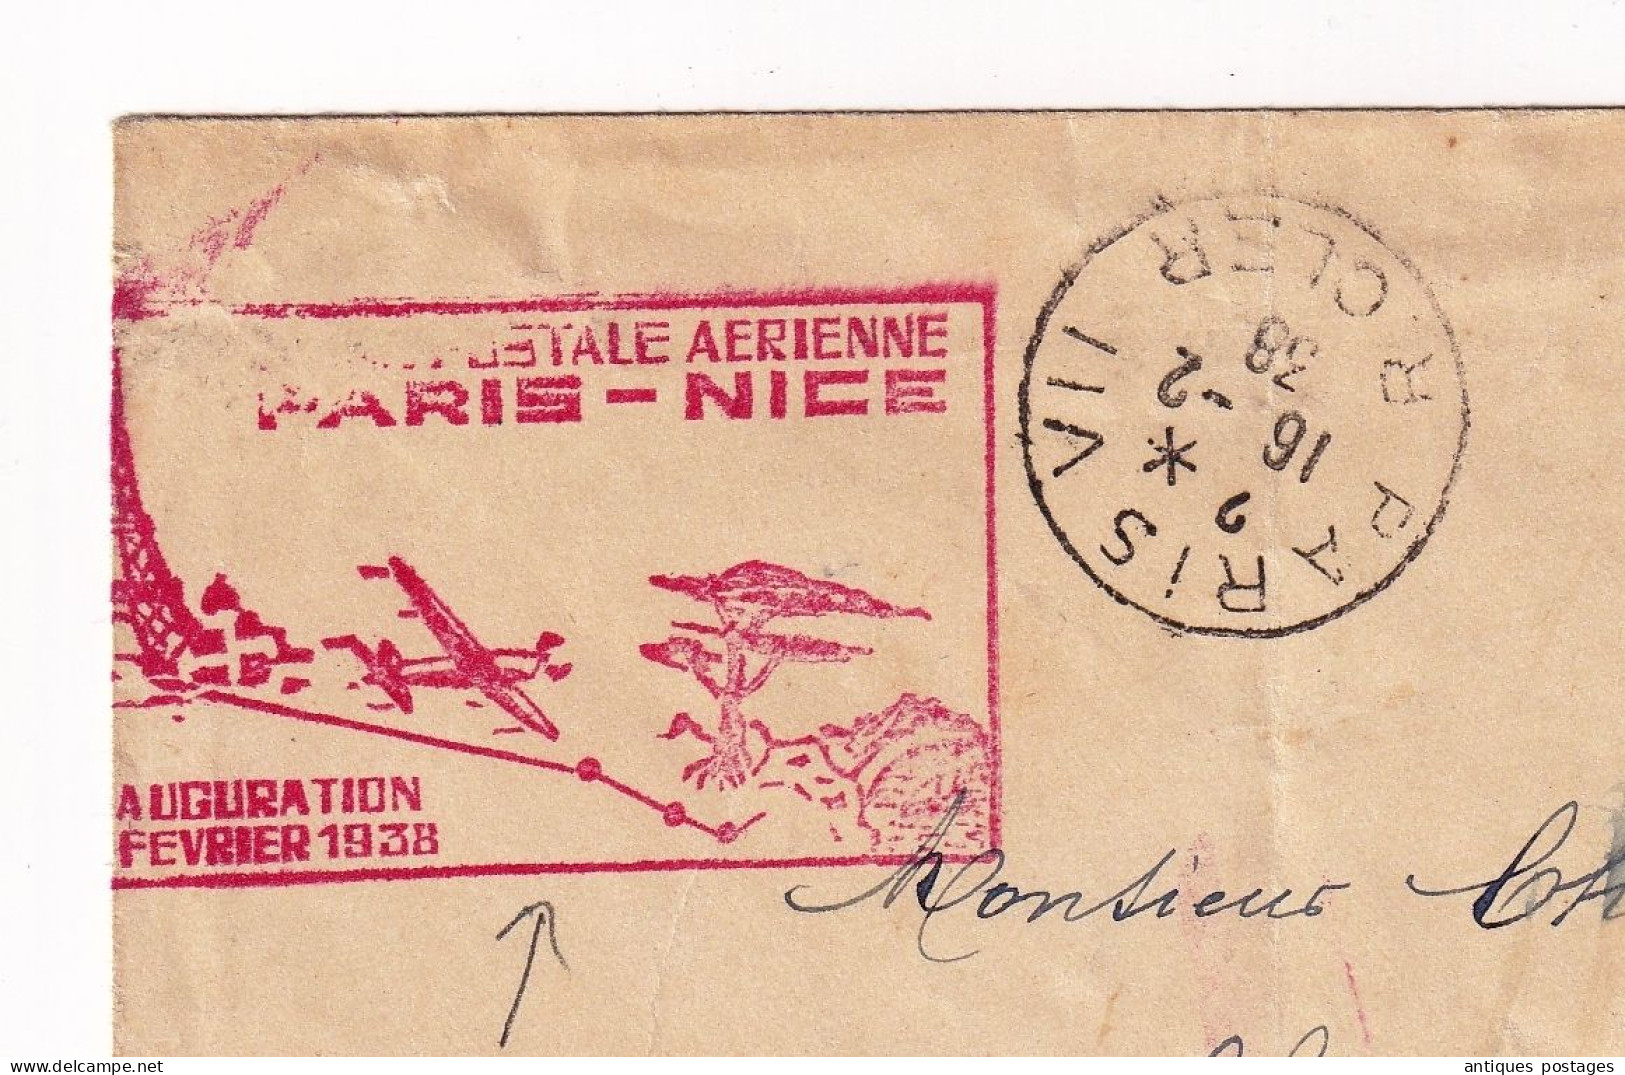 Lettre 16 Février 1938 Inauguration Ligne Postale Aérienne Paris Nice Pour Marseille Bouches Du Rhône - Storia Postale